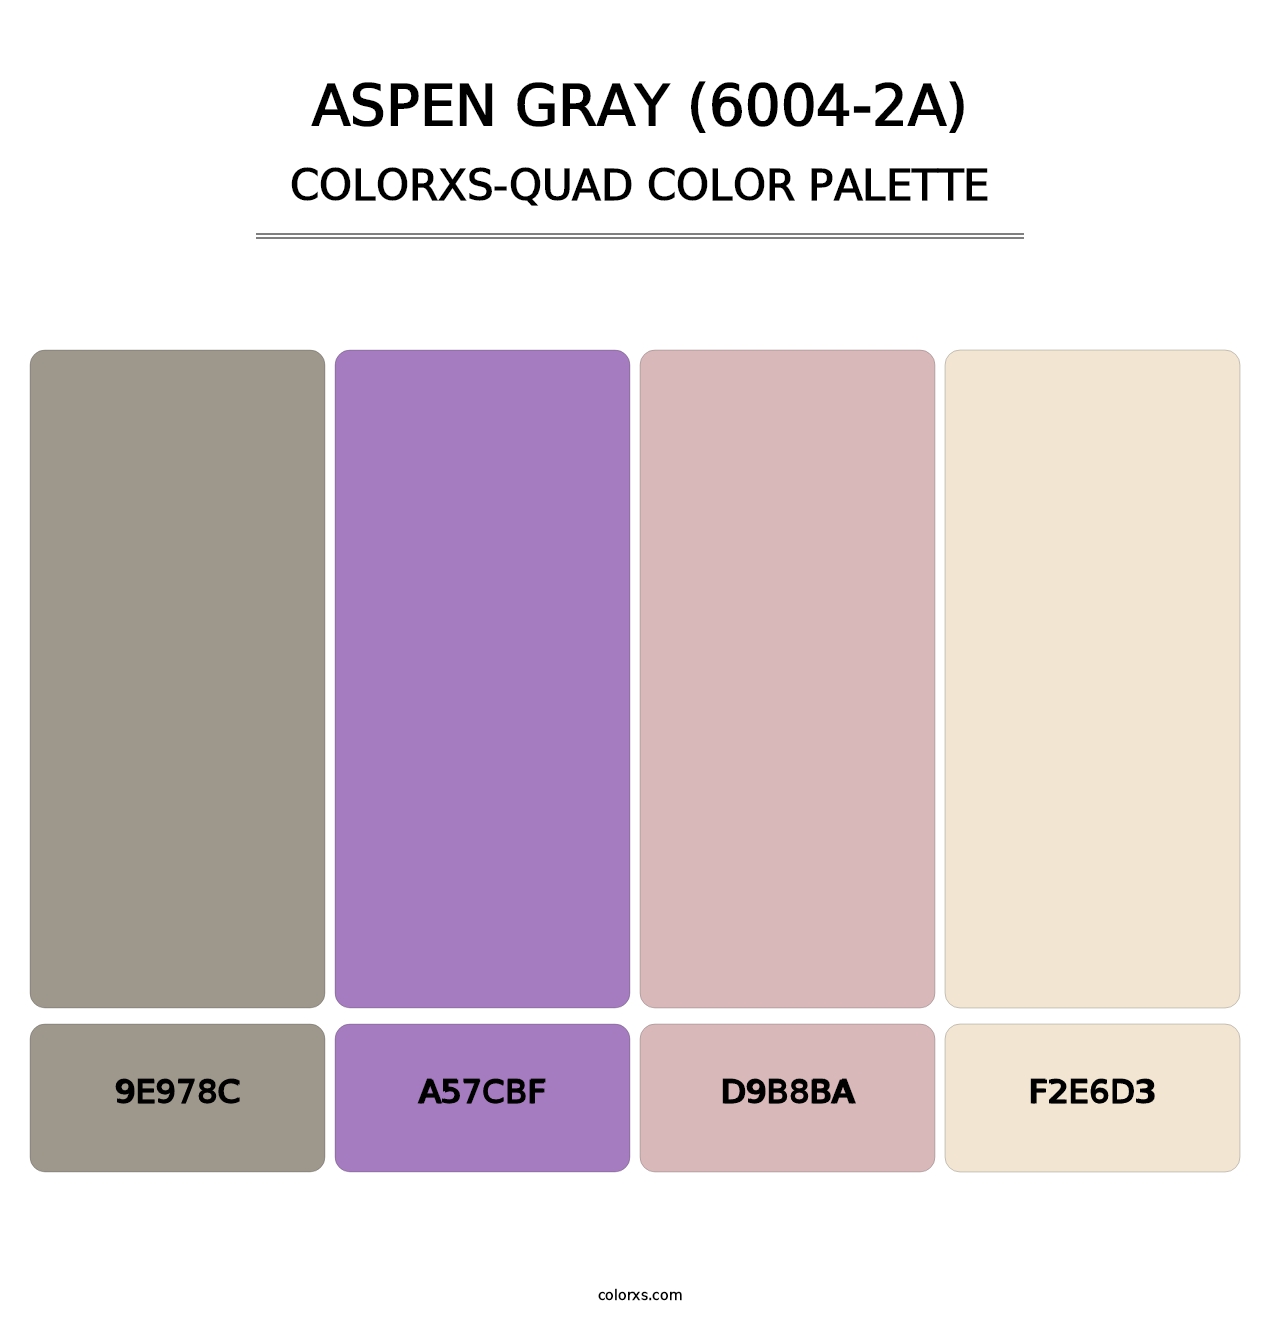 Aspen Gray (6004-2A) - Colorxs Quad Palette